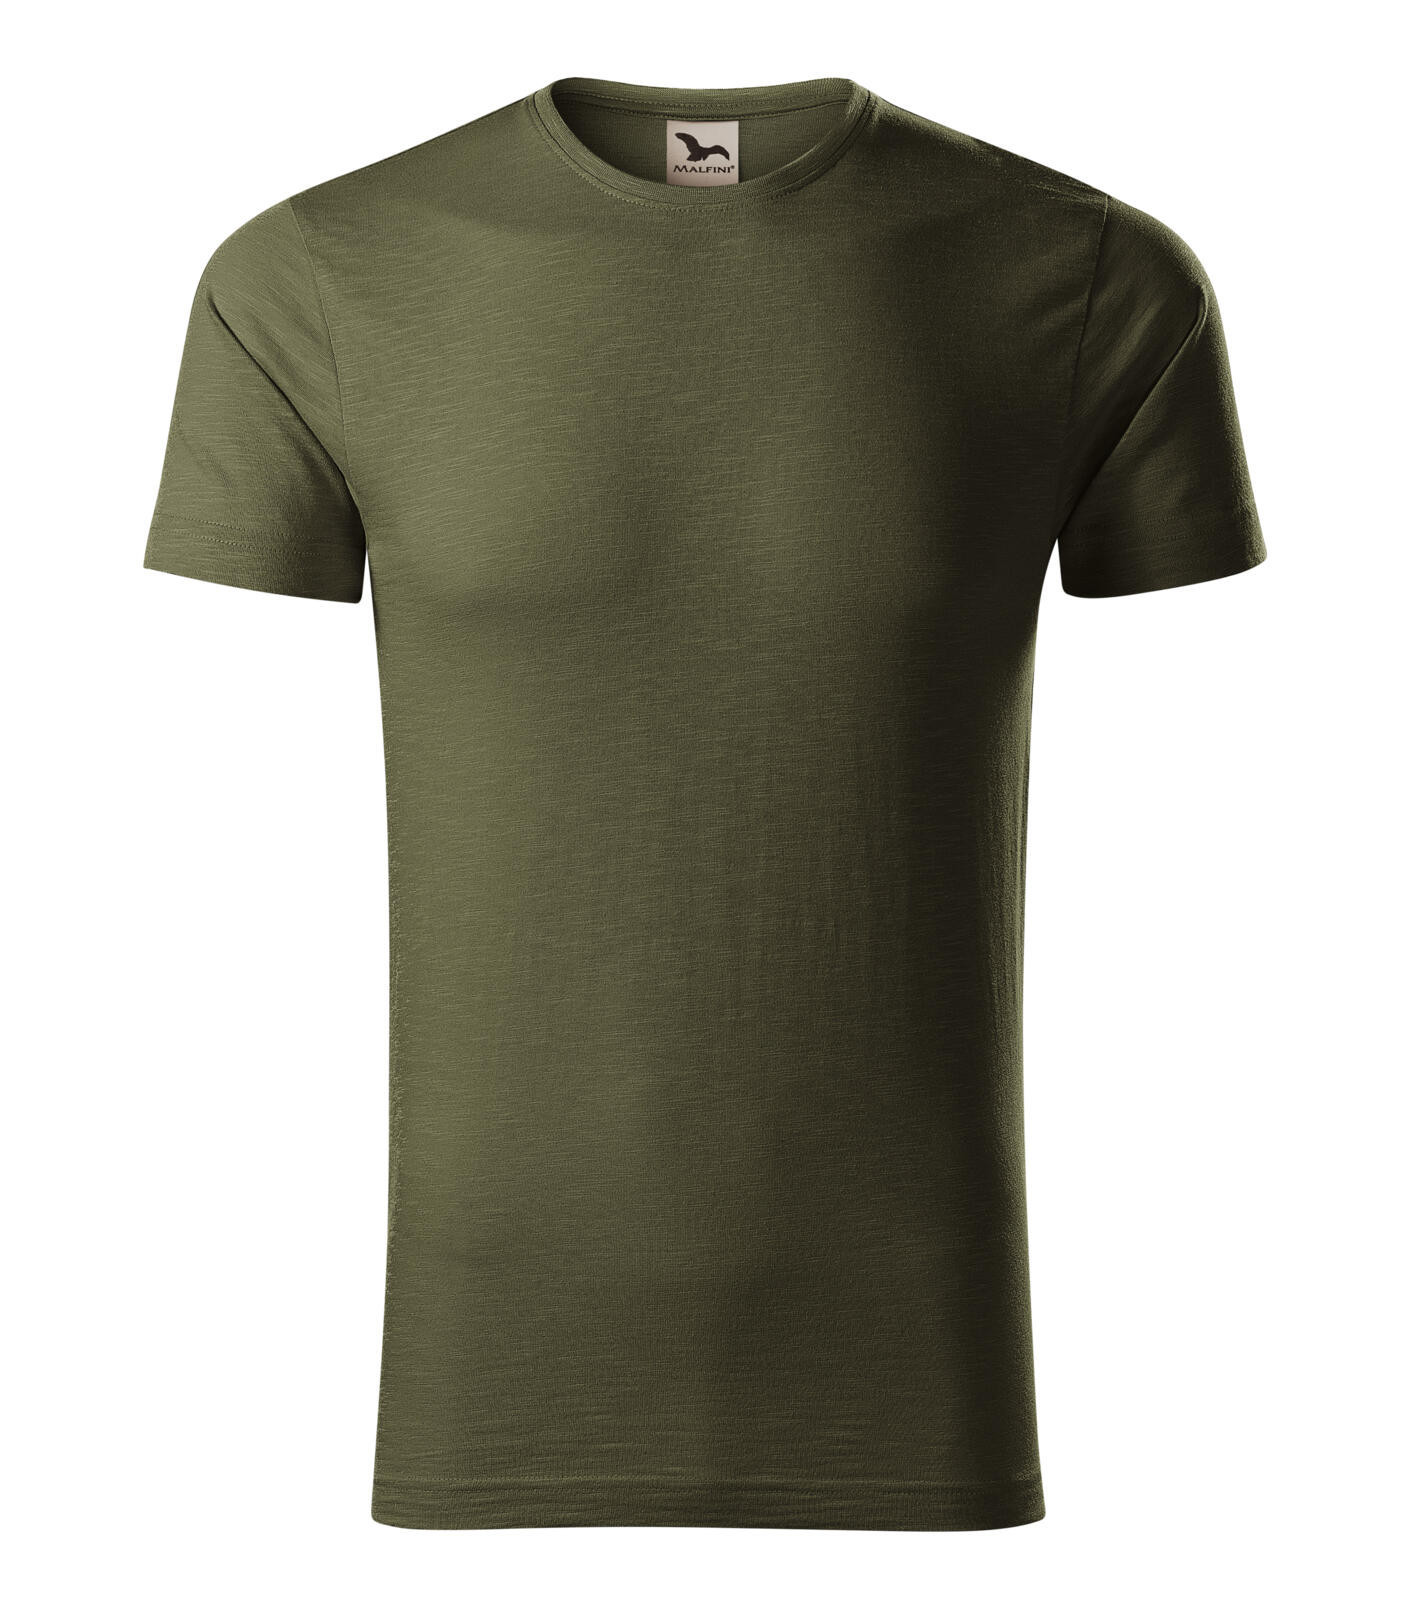 Pánske bavlnené tričko Malfini Native 173 - veľkosť: S, farba: military